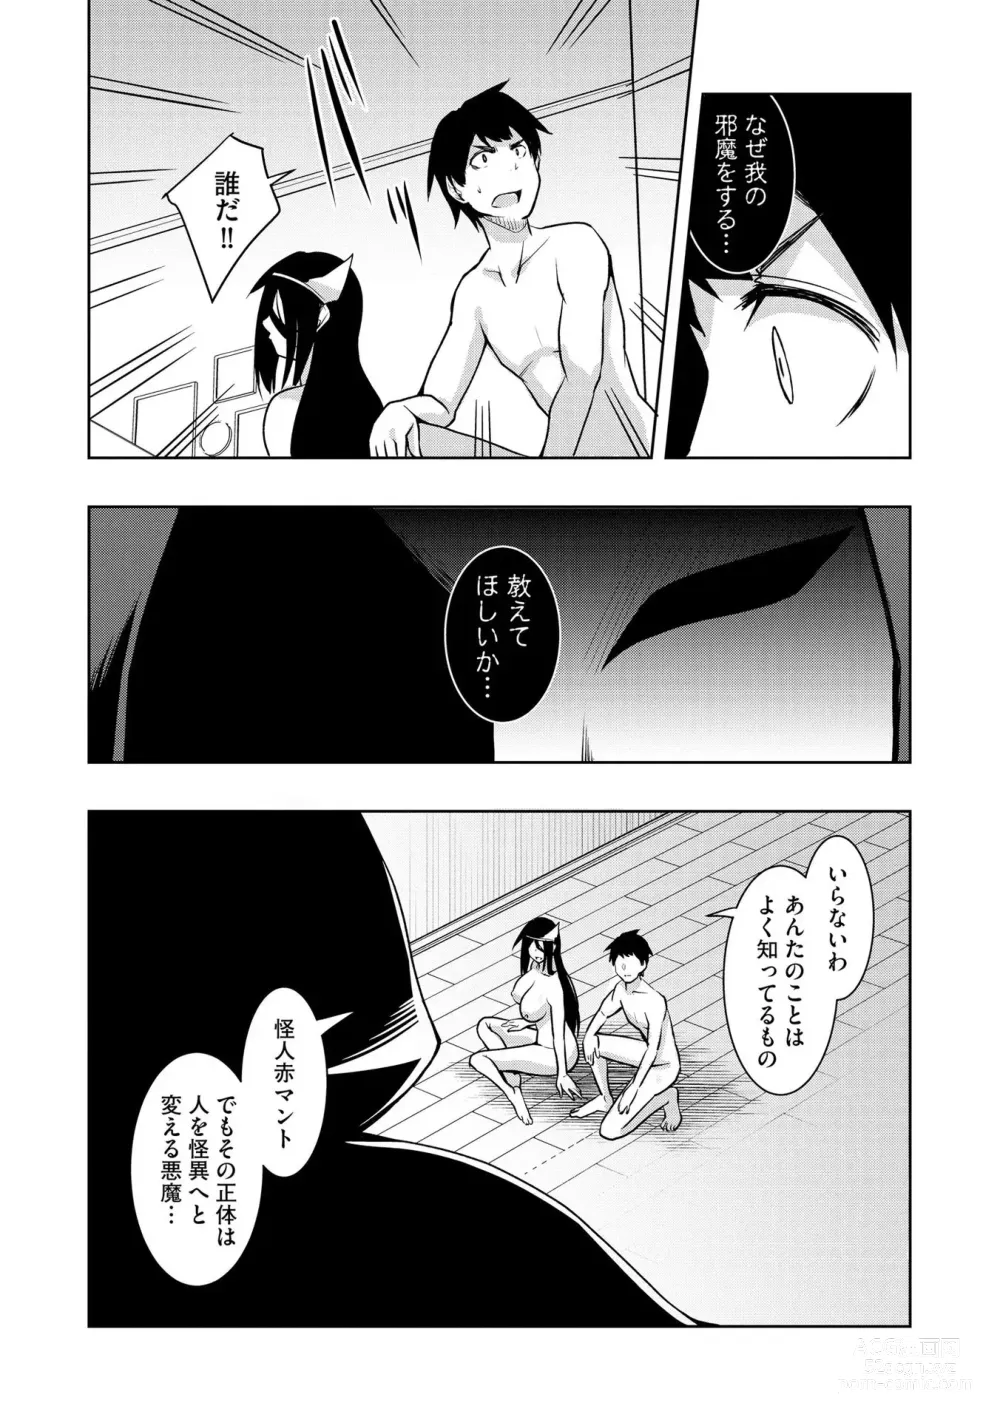 Page 172 of manga Kai-In Hontou wa Yarashii Toshi Densetsu